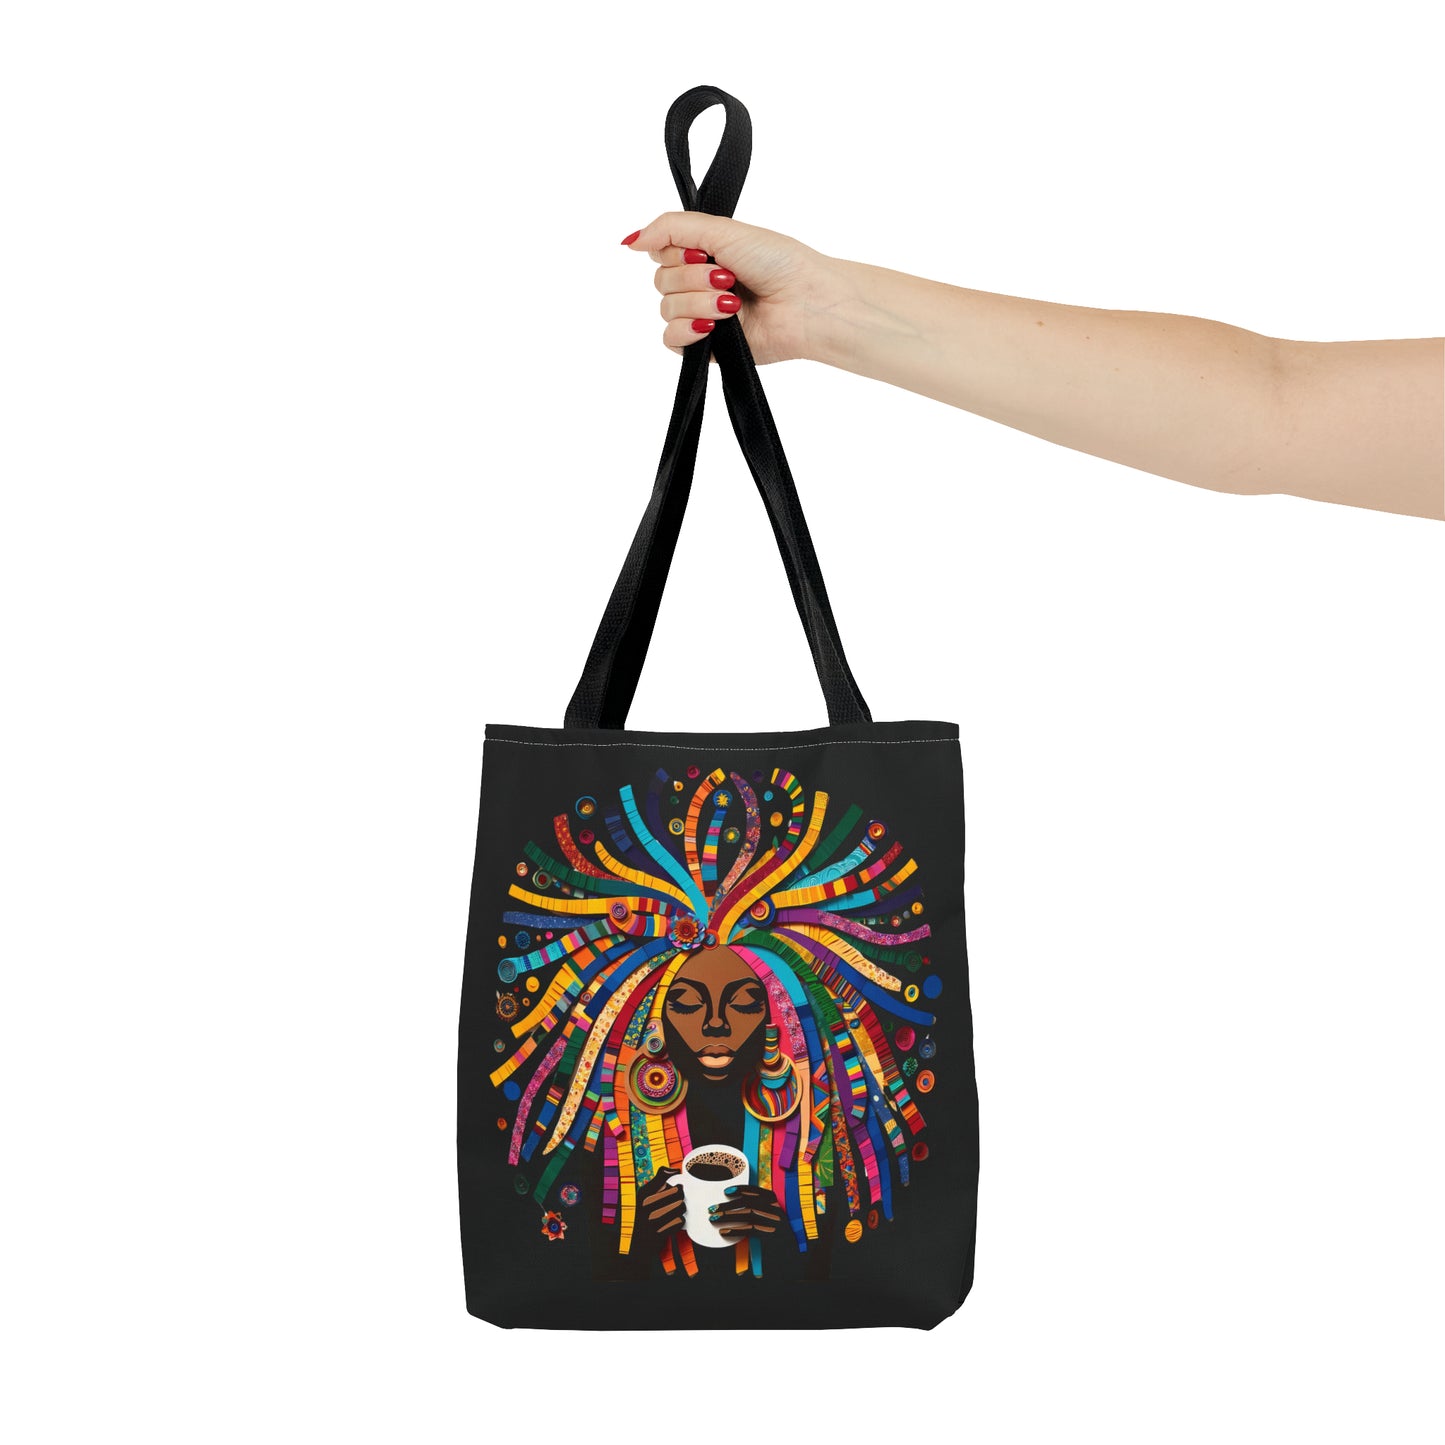 Kaleidoscope of Beauty Tote Bag: